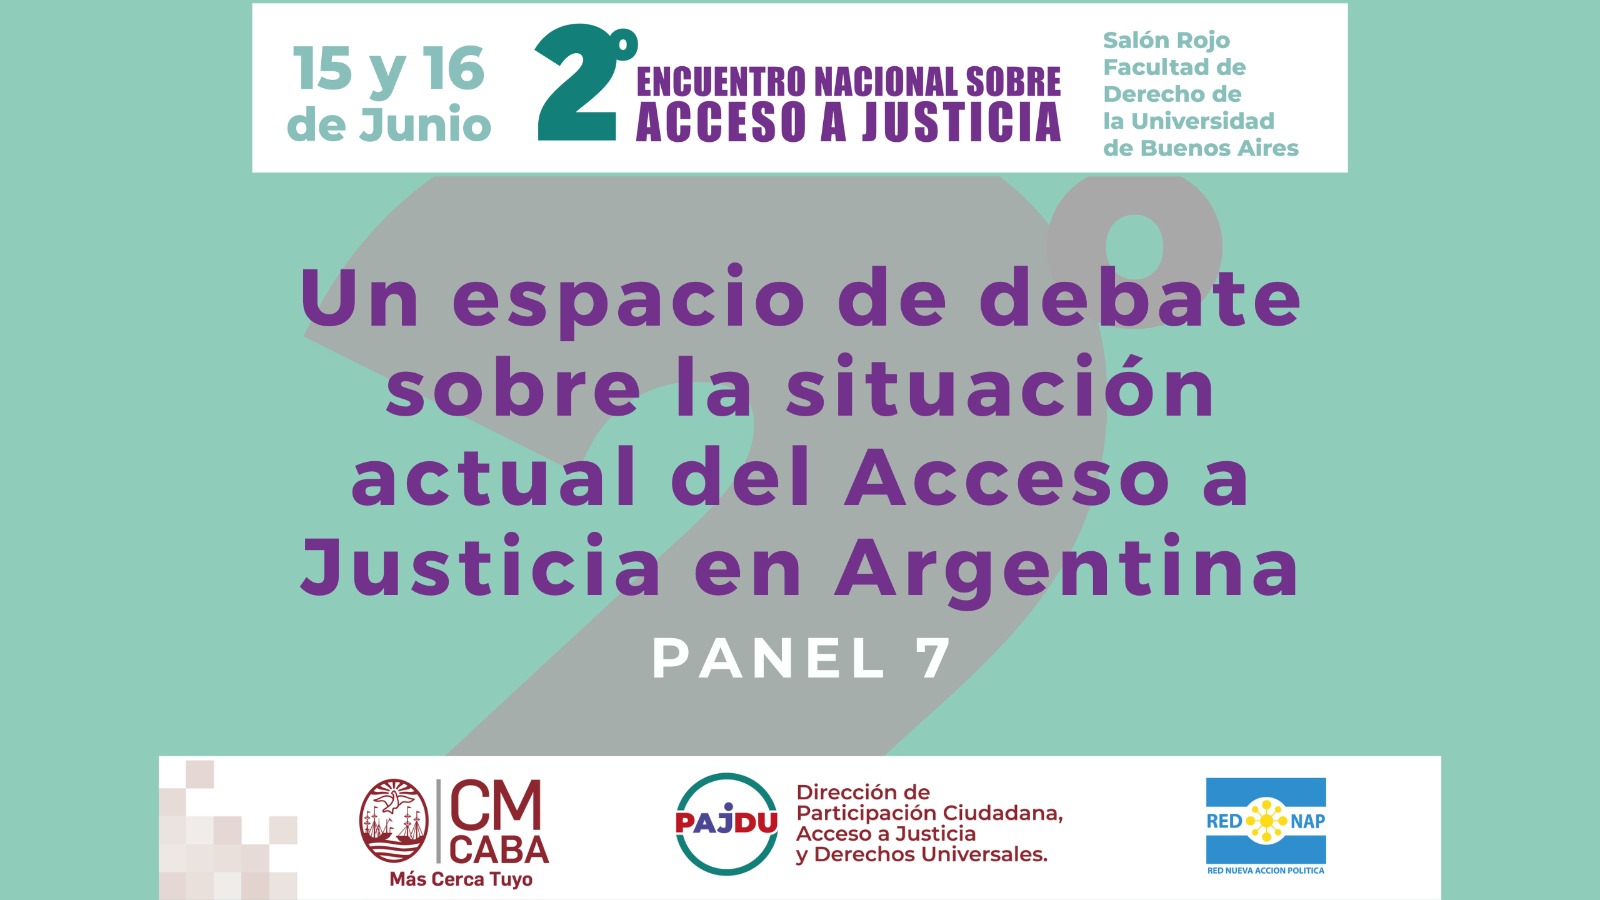 Panel 7: Acceso a Justicia bajo la perspectiva DESCA del 2do. Encuentro Nacional sobre Acceso a Justicia en Argentina.